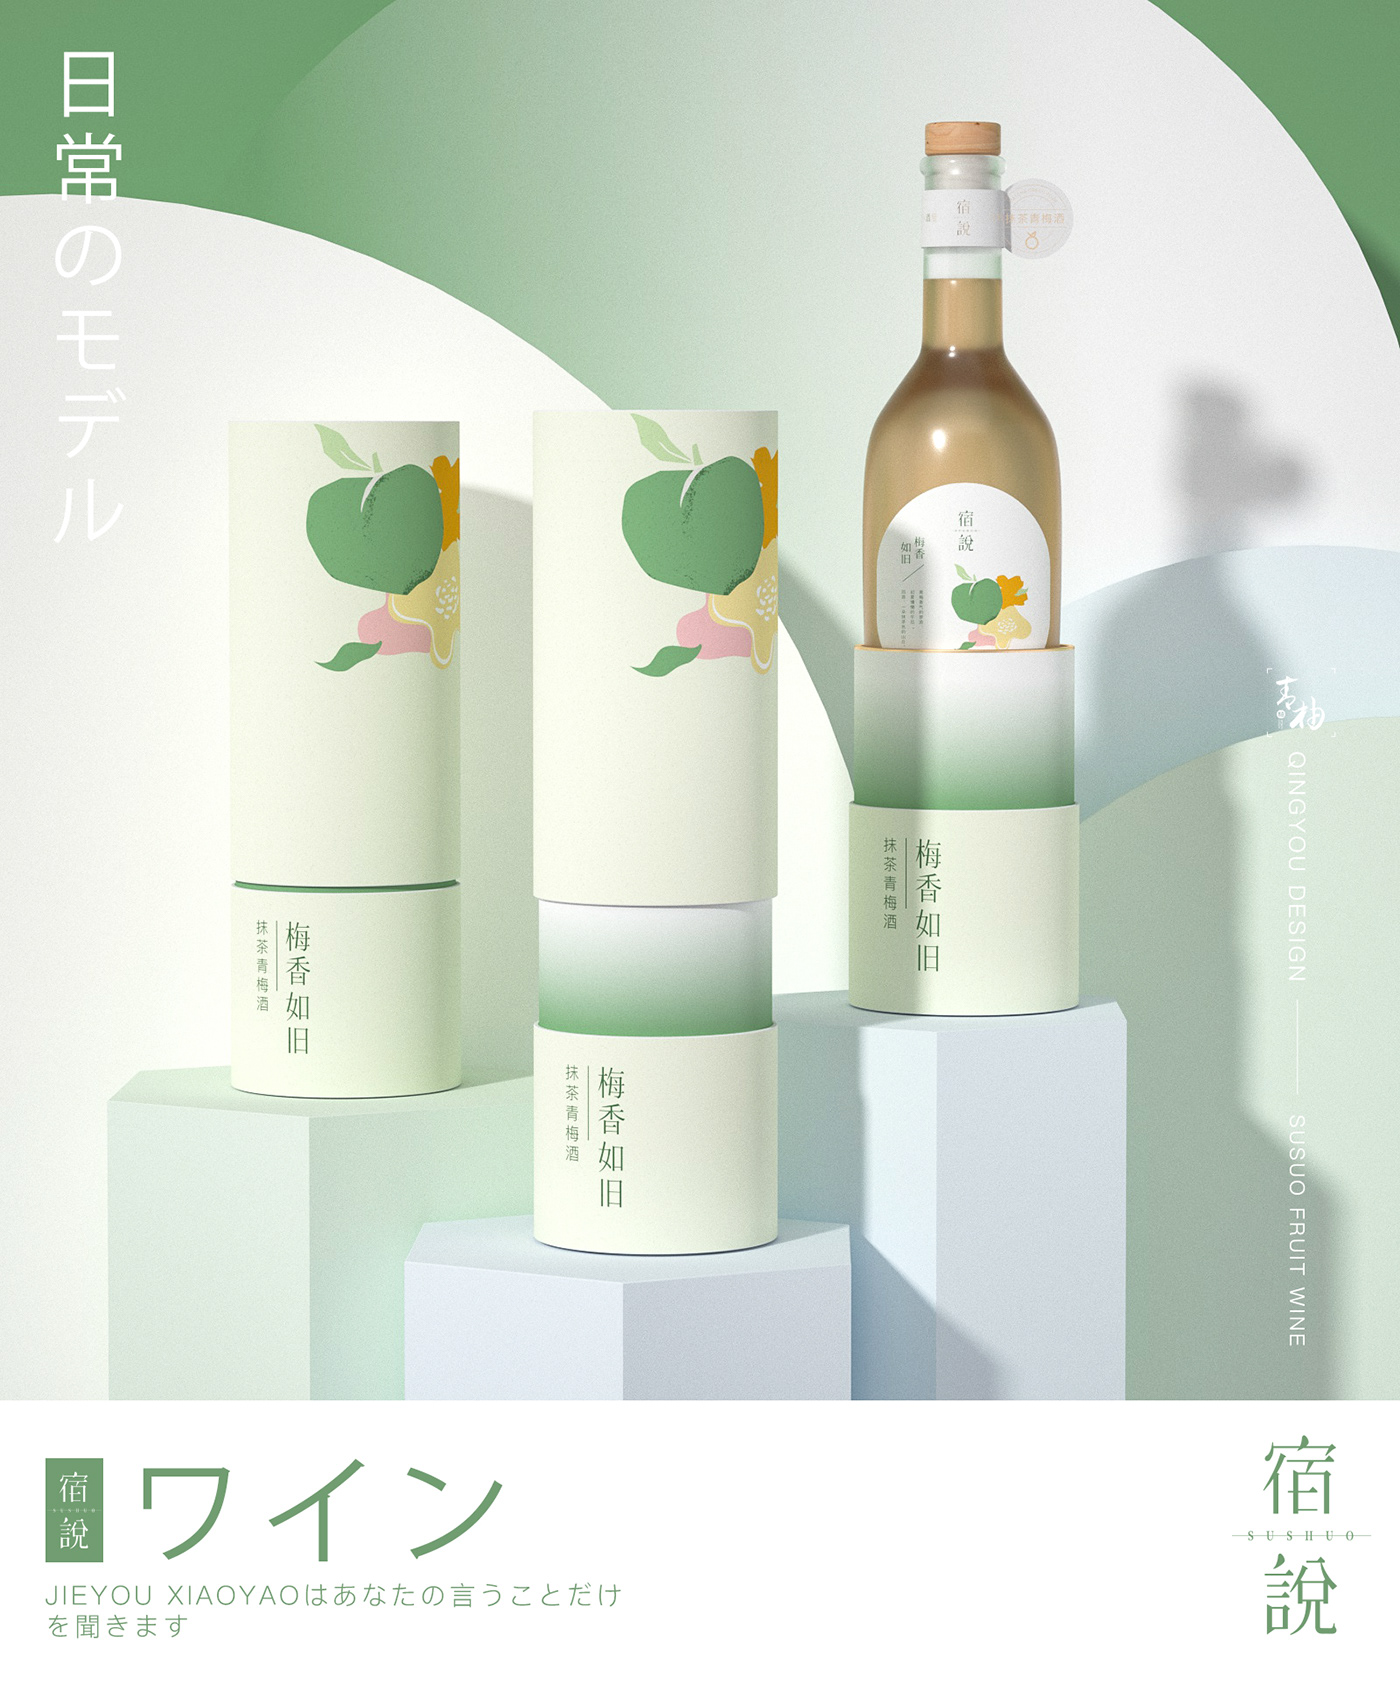 果酒 Packaging Brand Design bottle packaging design wine alcohol